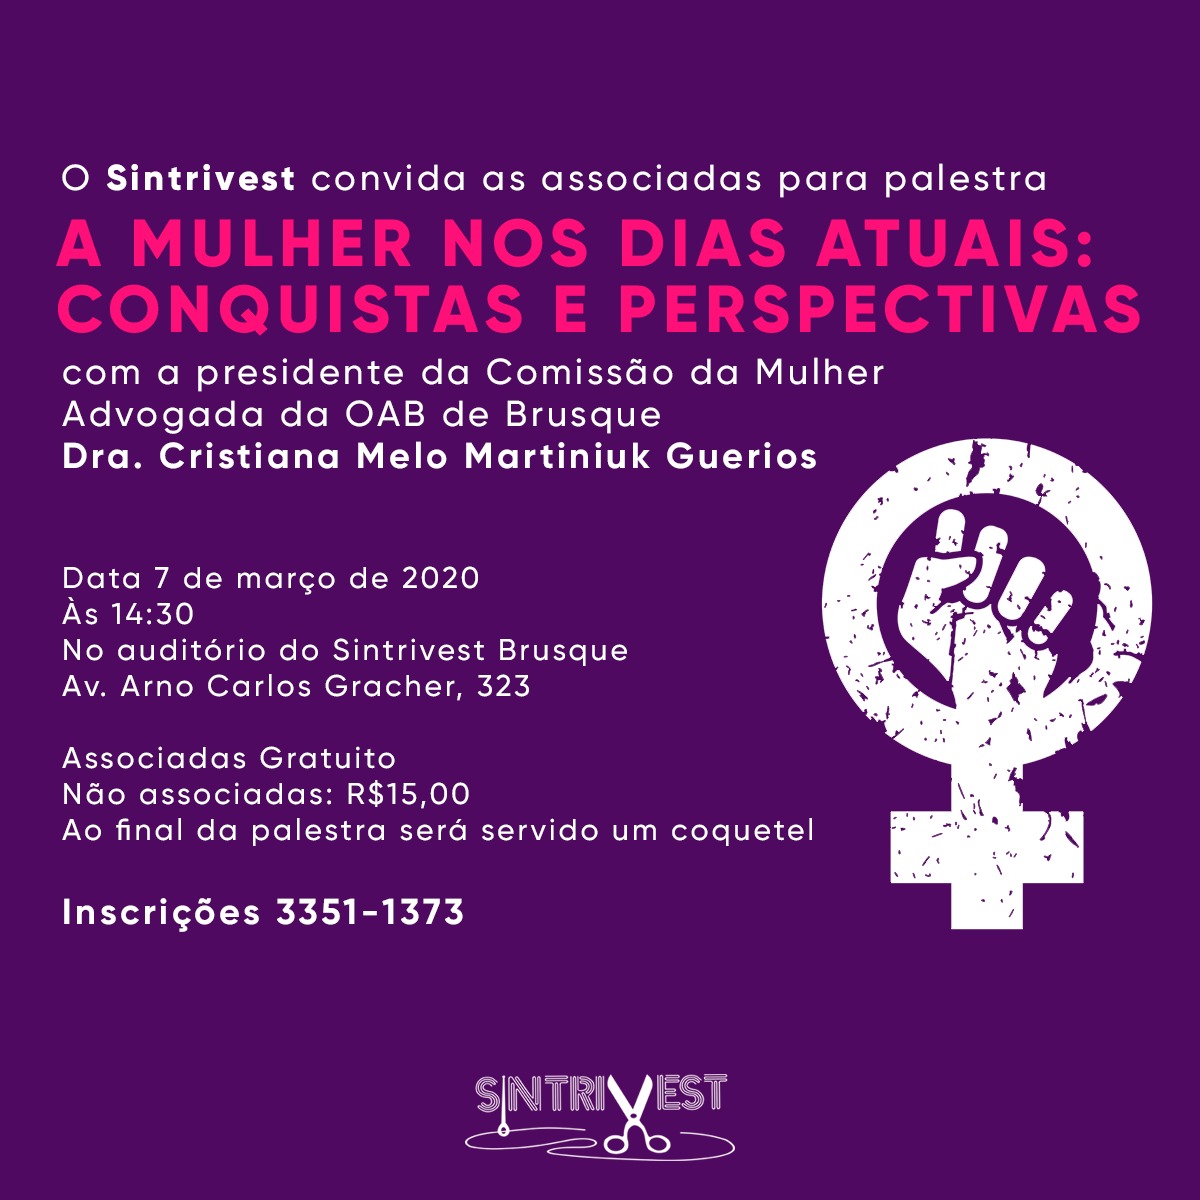 Sintrivest promove evento alusivo ao Dia Internacional da Mulher no dia 7 de março